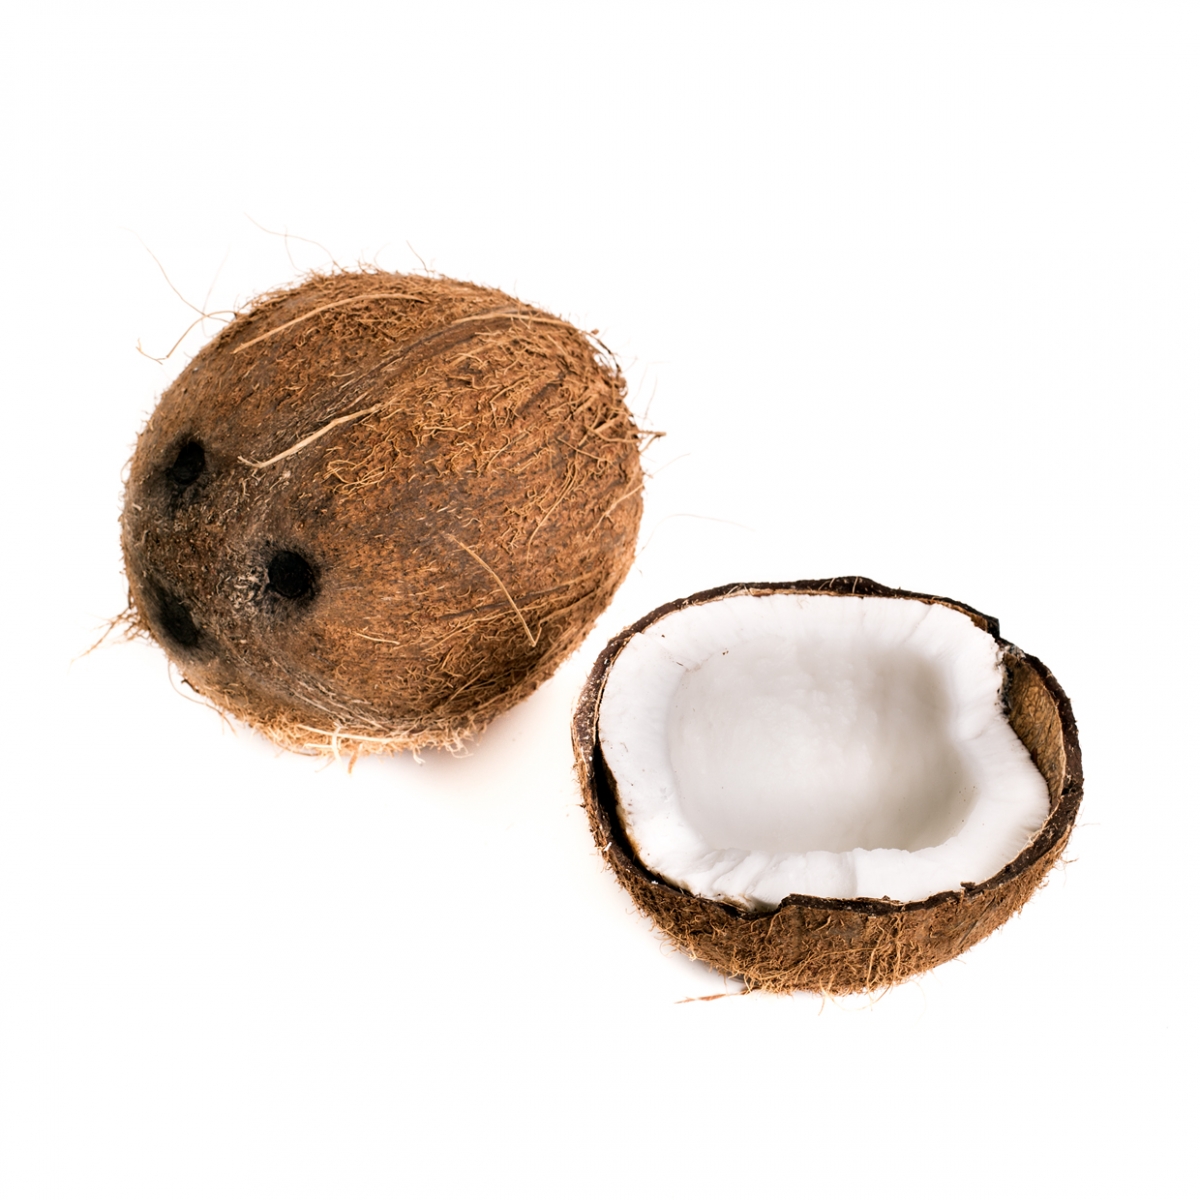 Imagen en la que se ve un coco